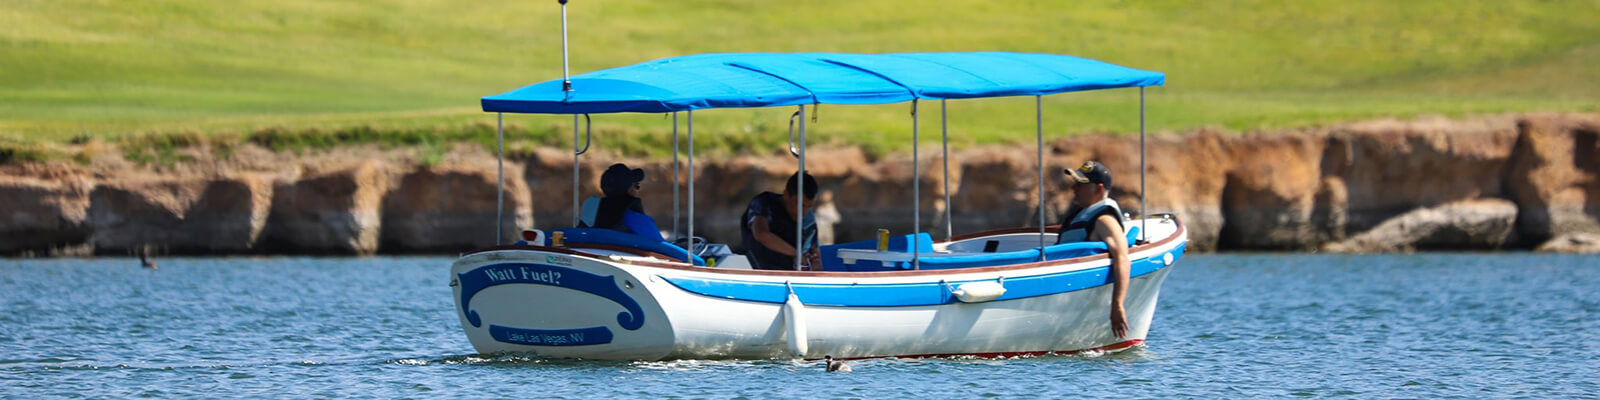 Lake Las Vegas Trevi Jay Boat Rental Coupons